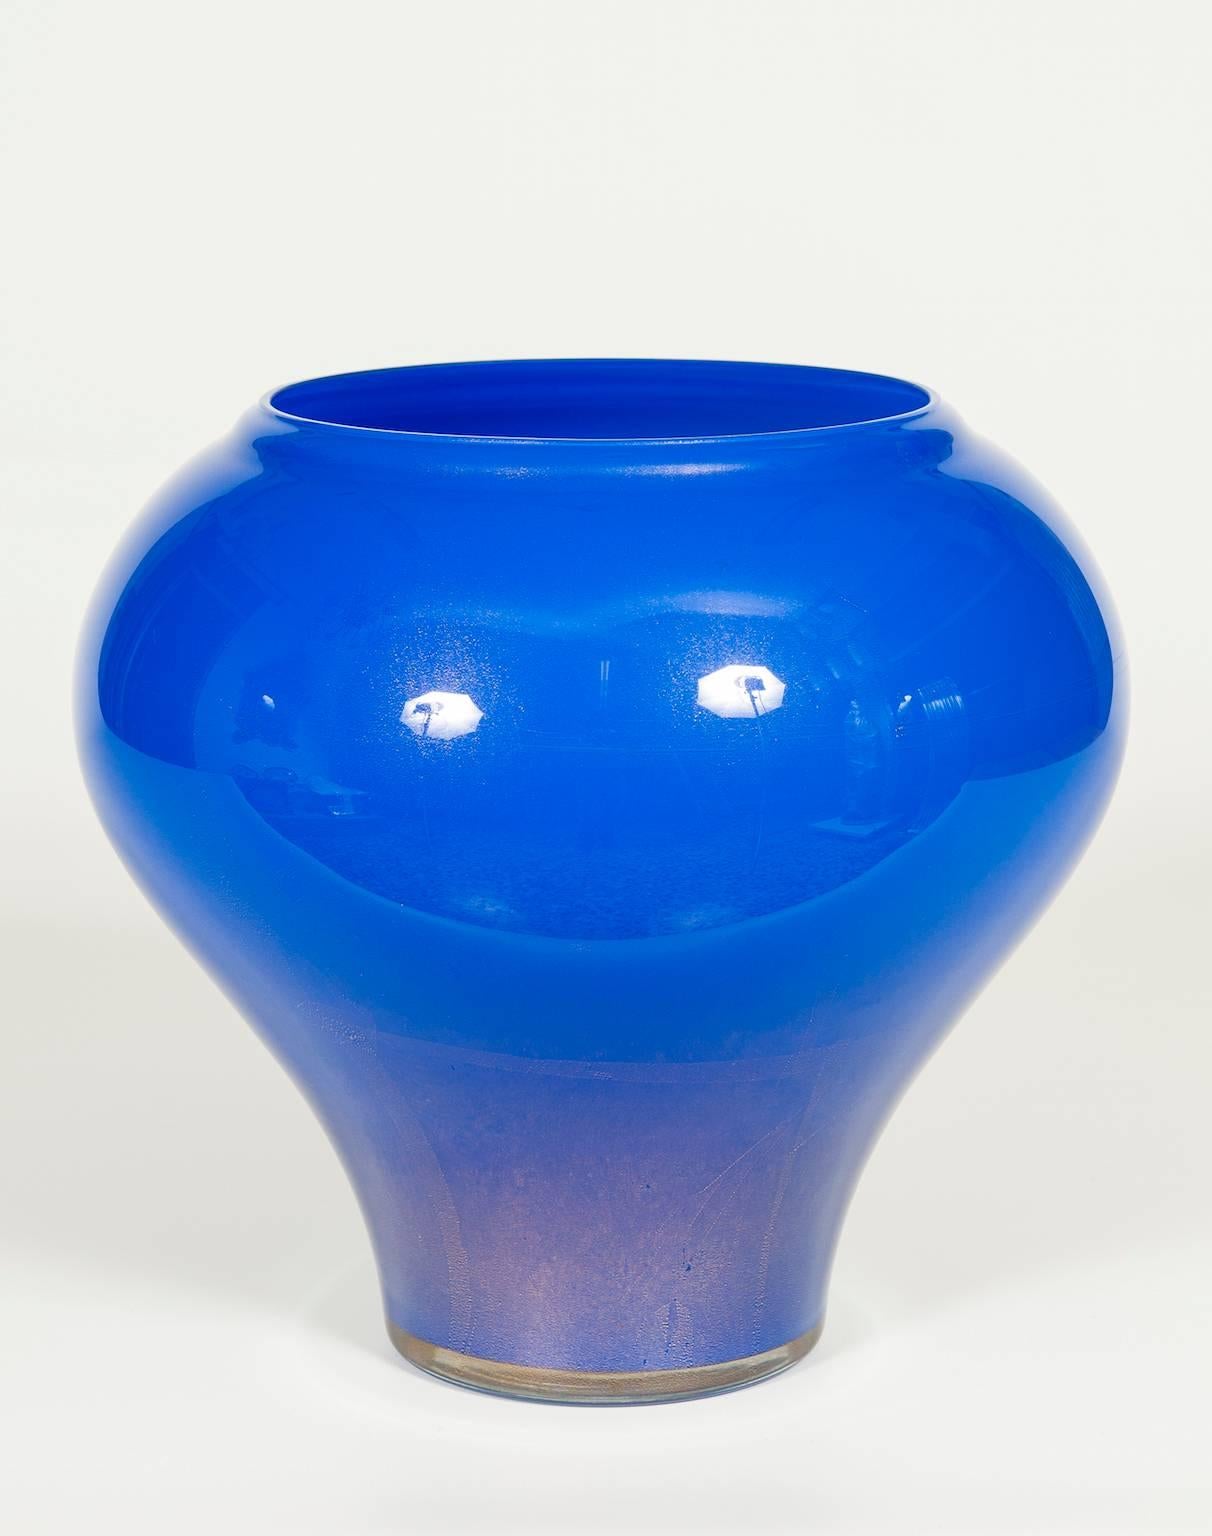 Vase italien en verre de Murano de couleur bleu et or, en excellent état d'origine, comme en témoignent les photos jointes. L'œuvre d'art est une fabrication de verre de Murano, entièrement réalisée à la main, au cours des années 1980. 
Le vase fait